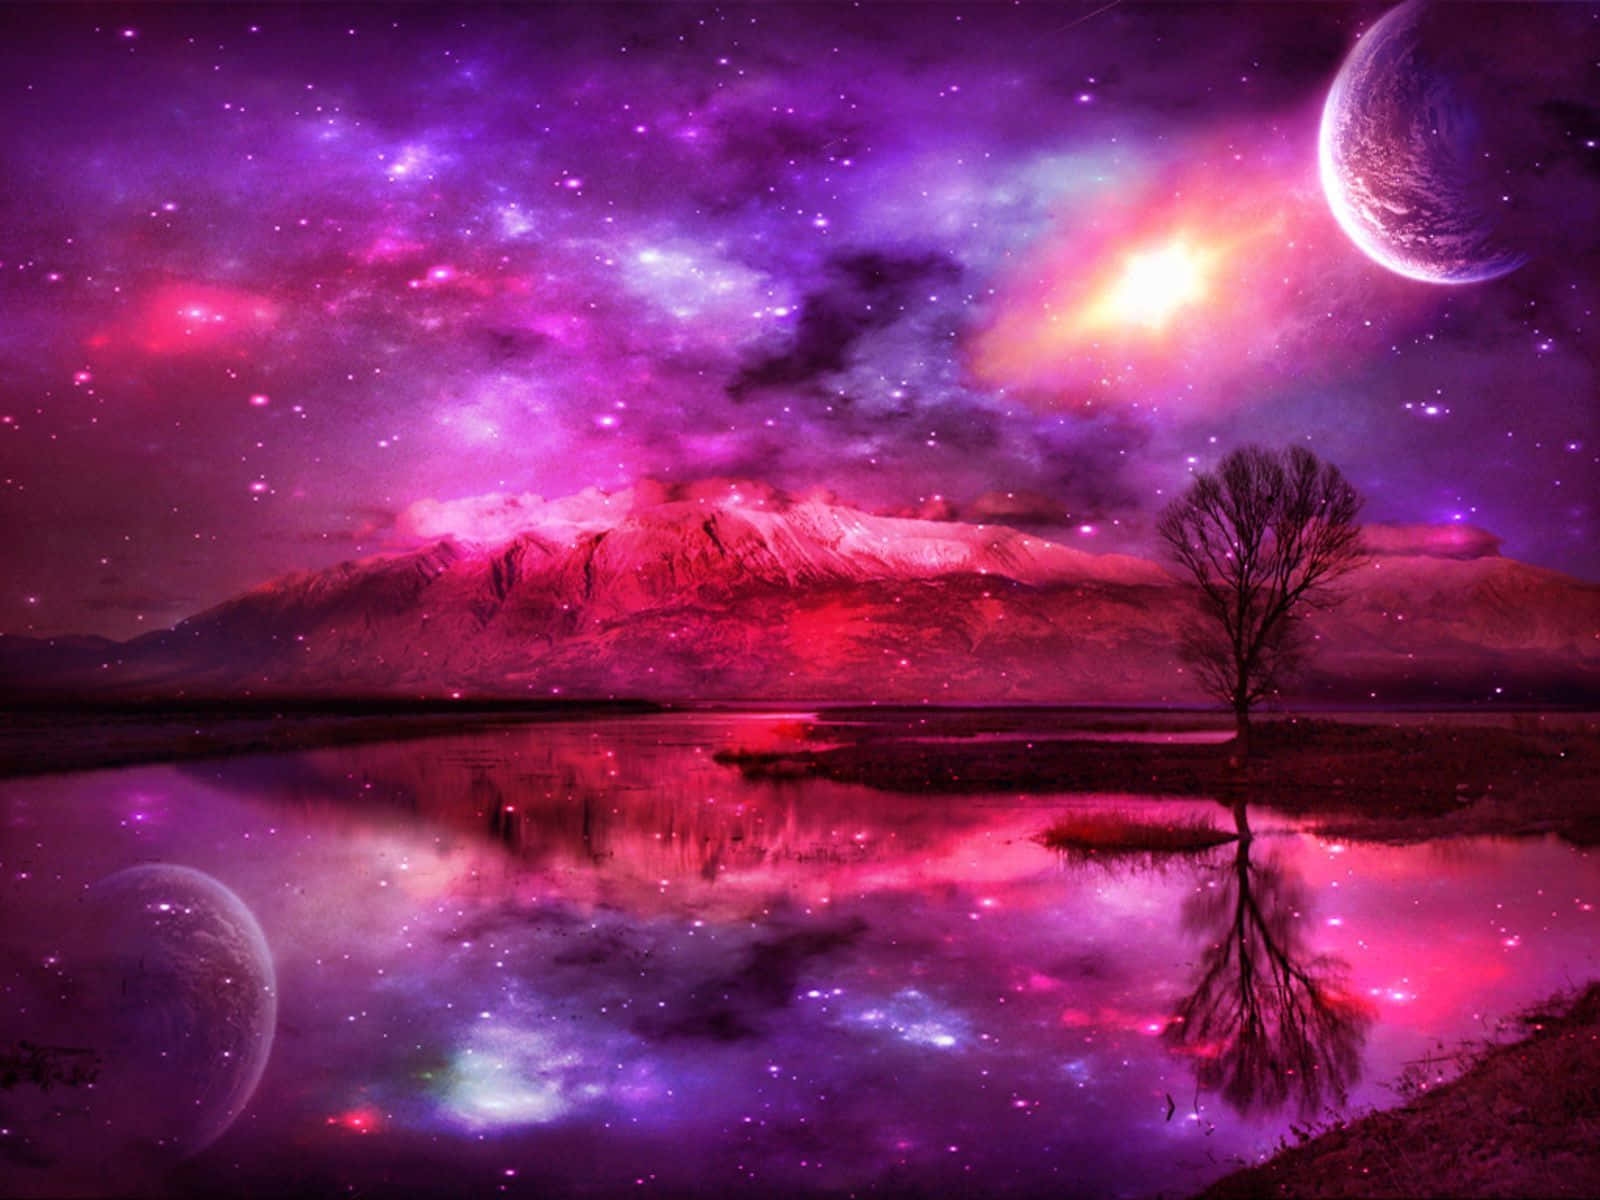 En glimrende visning af pink og lilla stjerner i en galakse. Wallpaper